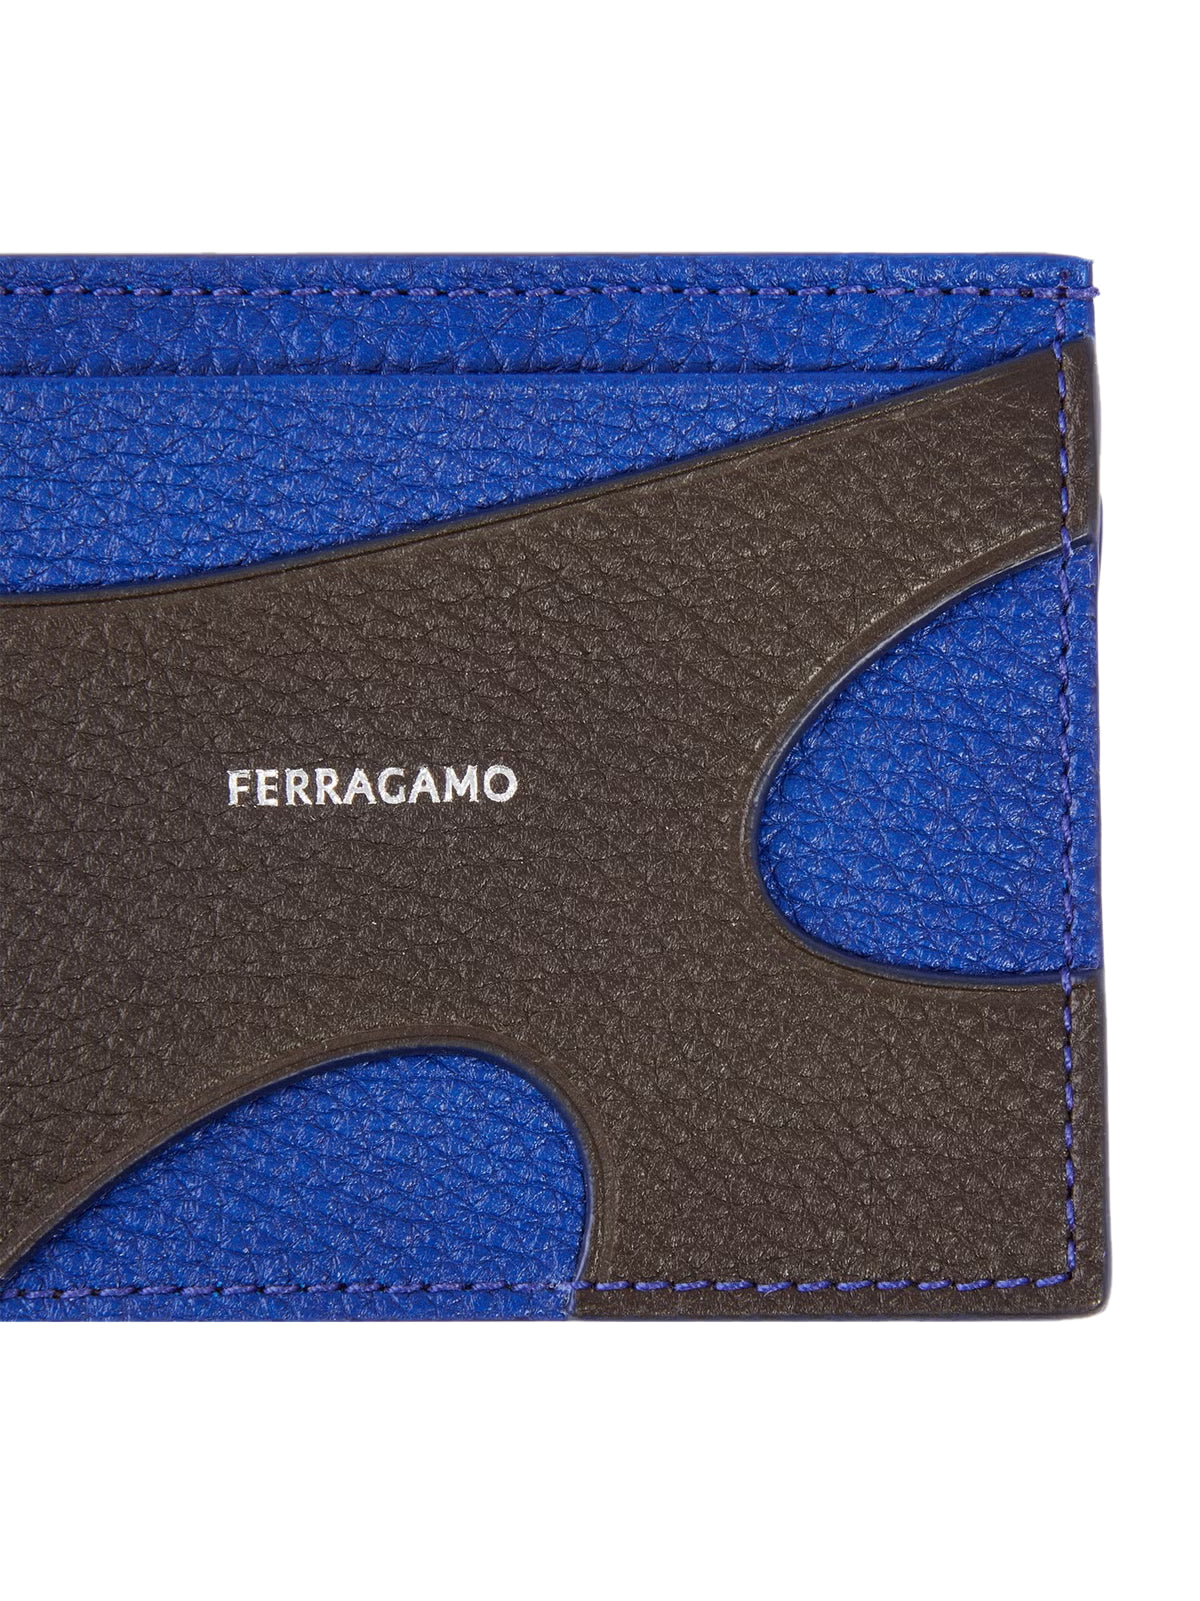 Ferragamo-OUTLET-SALE-Cut Out Logo Card Case-ARCHIVIST